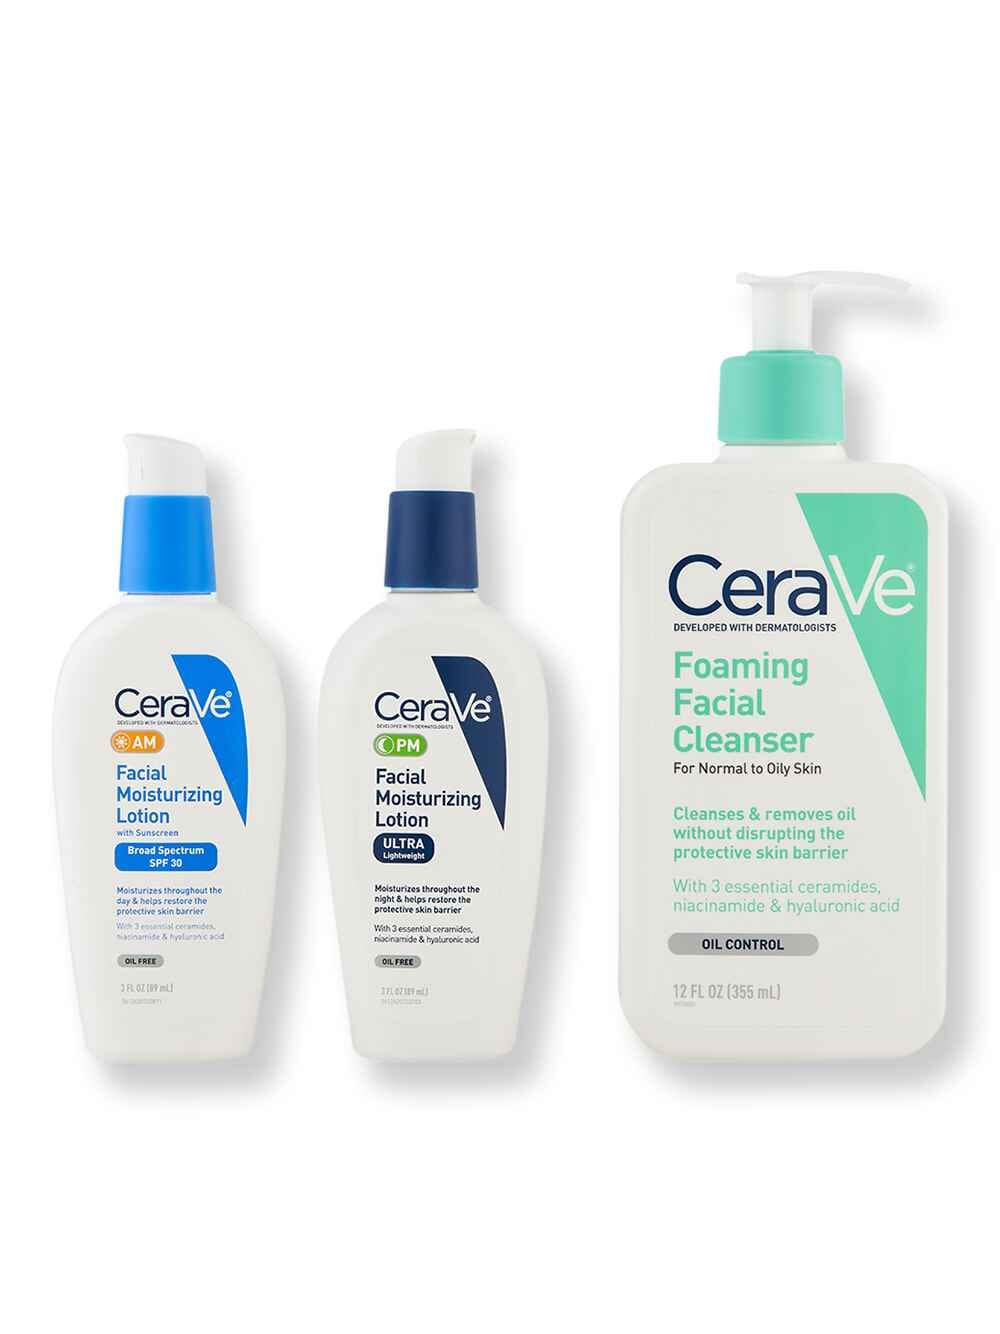 CeraVe CeraVe Foaming Facial Cleanser 12 oz, Facial Moisturizing Lotion AM 3 oz & Facial Moisturizing Lotion PM 3 oz Skin Care Kits 